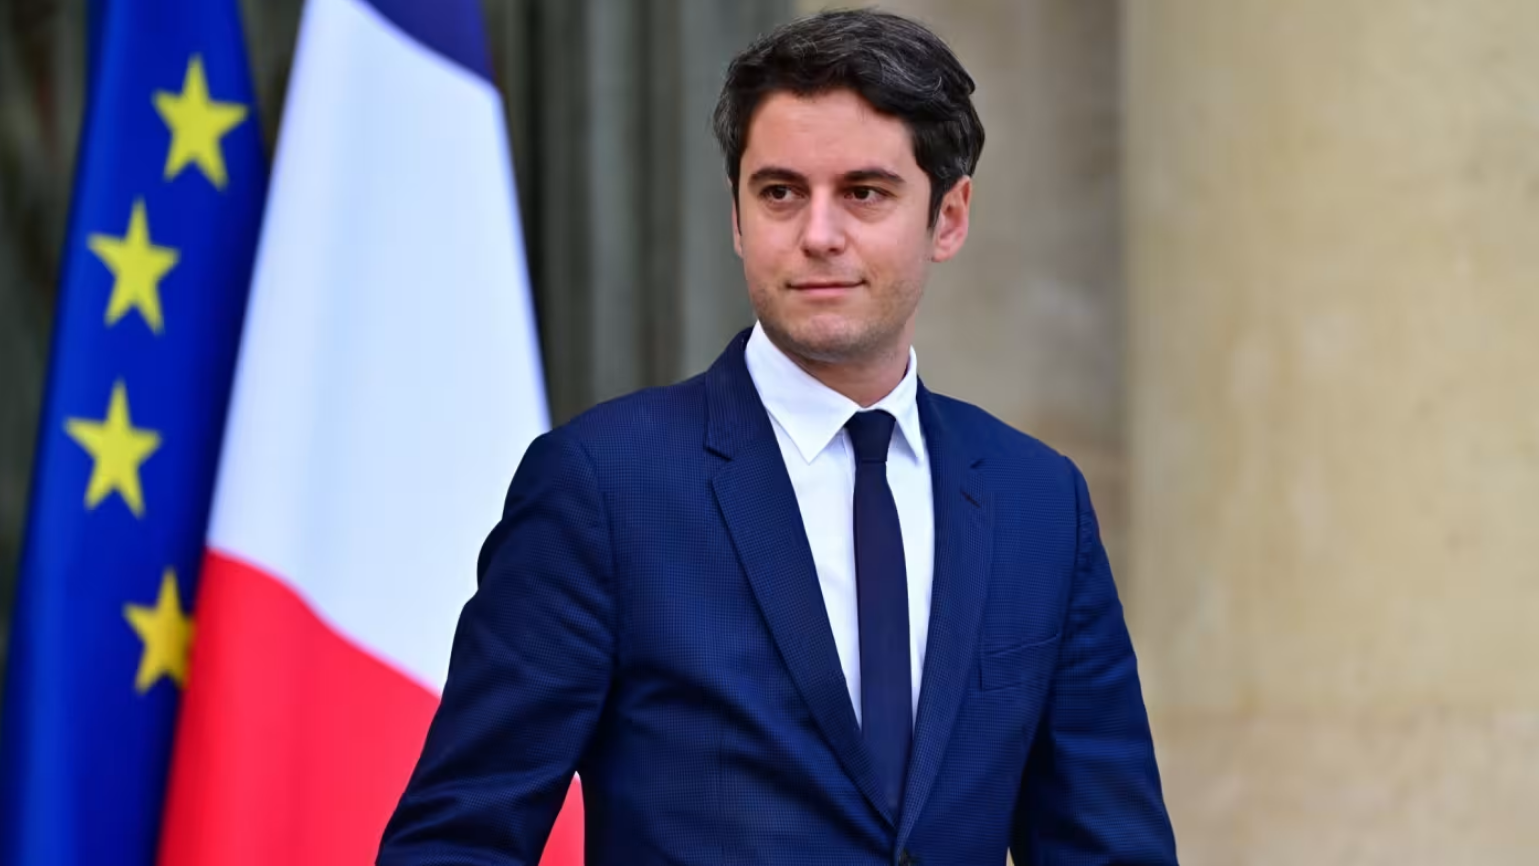 Thế giới - Ông Macron bổ nhiệm đồng minh thân cận 34 tuổi làm tân Thủ tướng Pháp